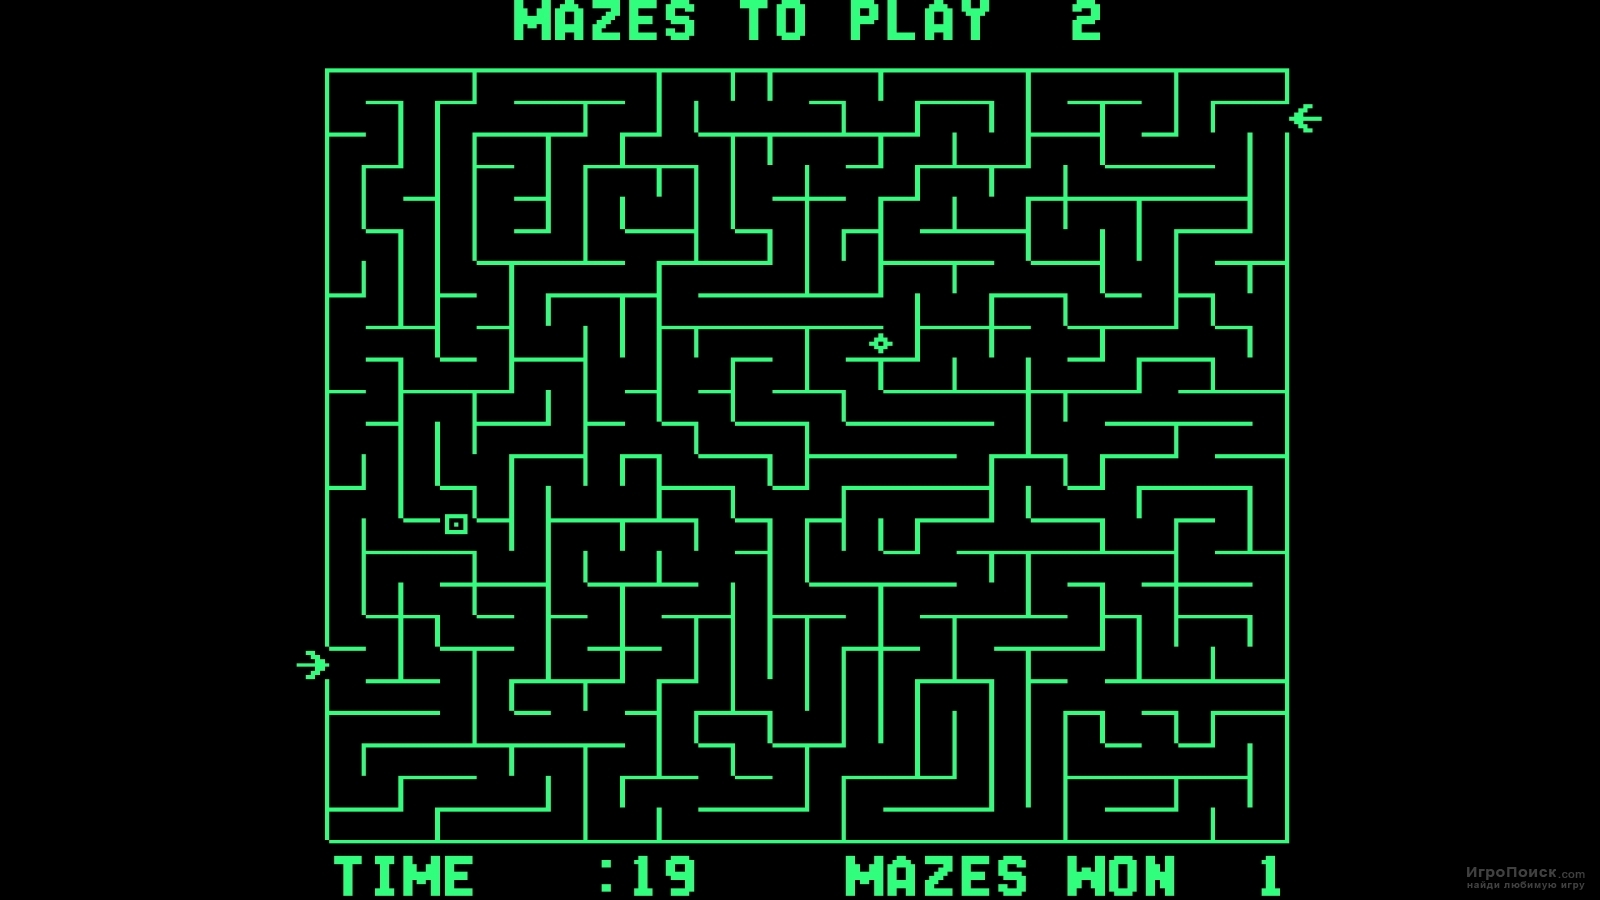    Amazing Maze